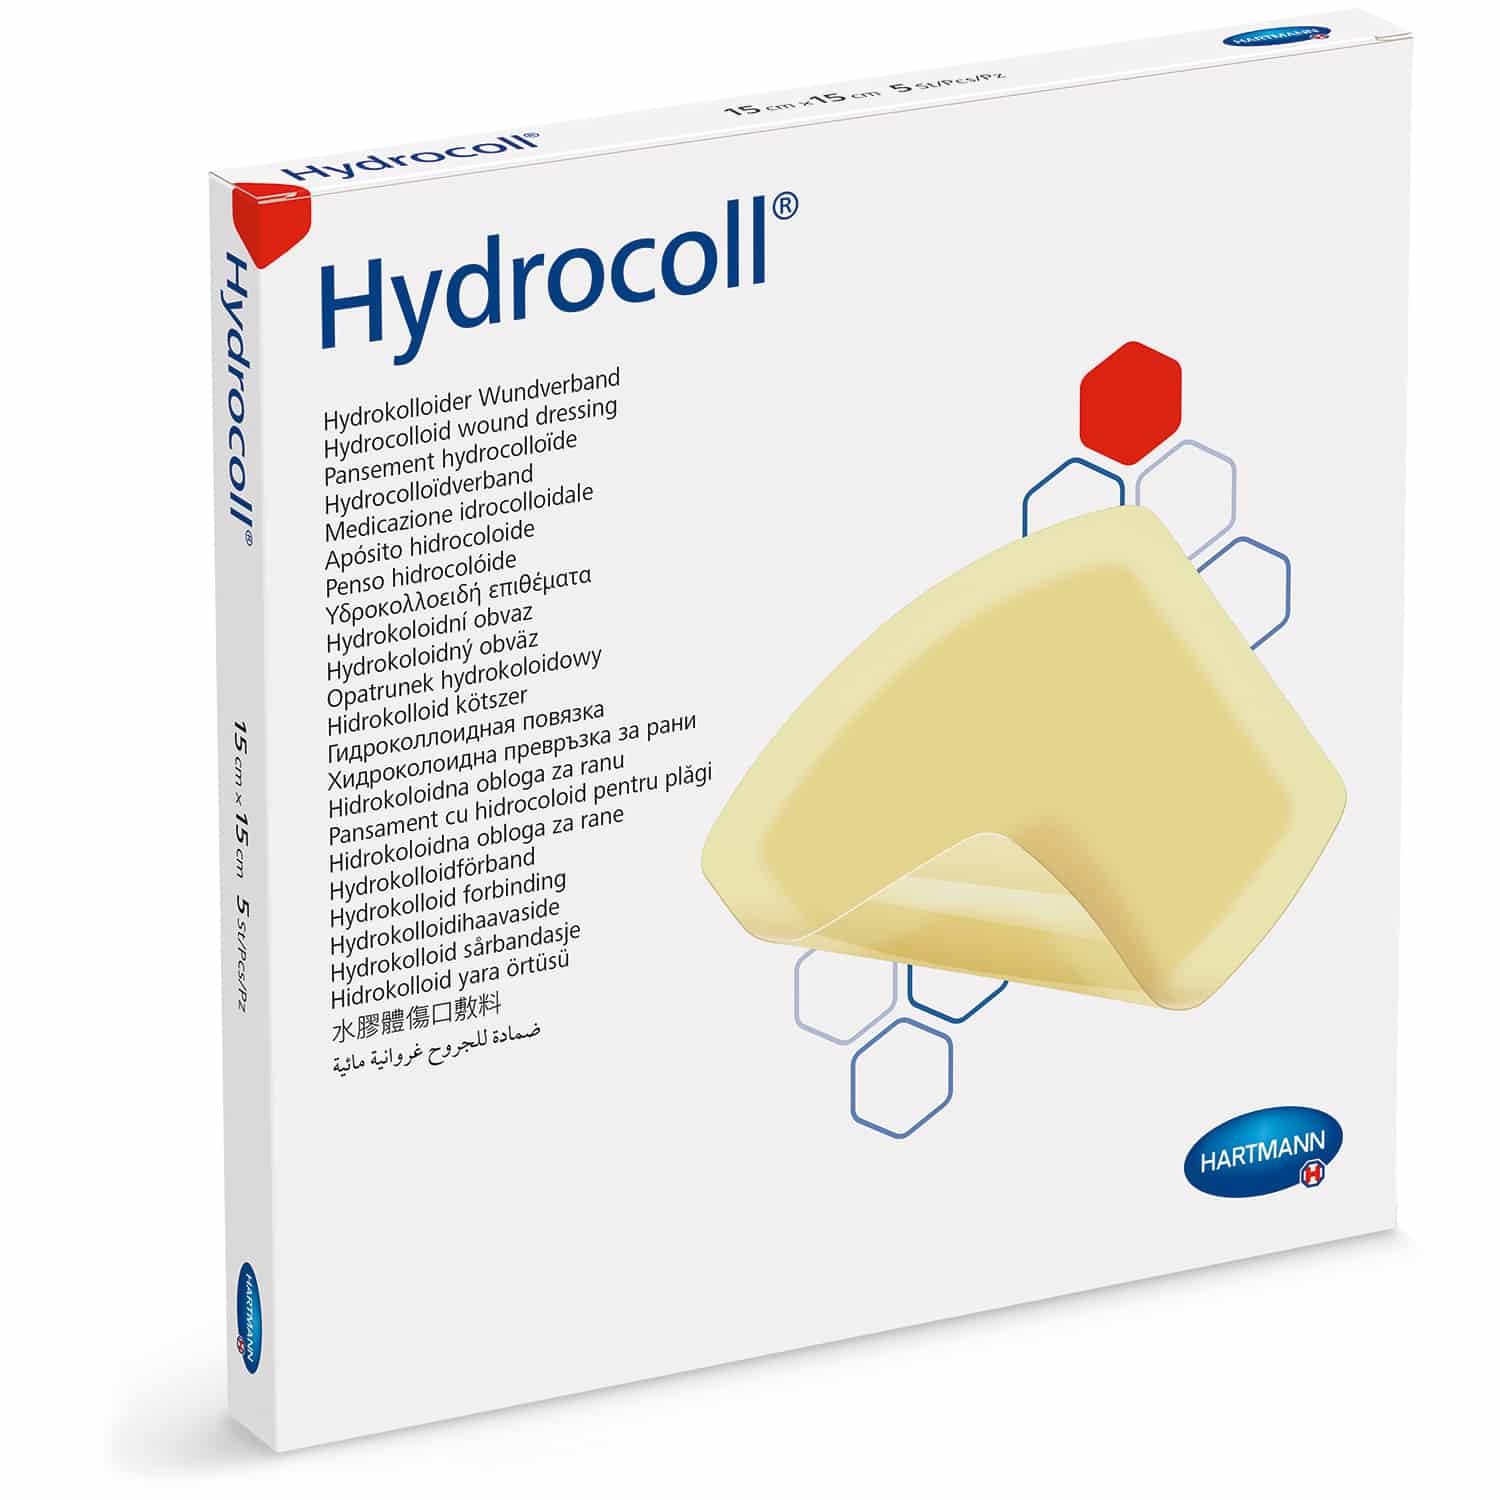 Pansement Hydrocolloïde: Pansement Hydrocoll